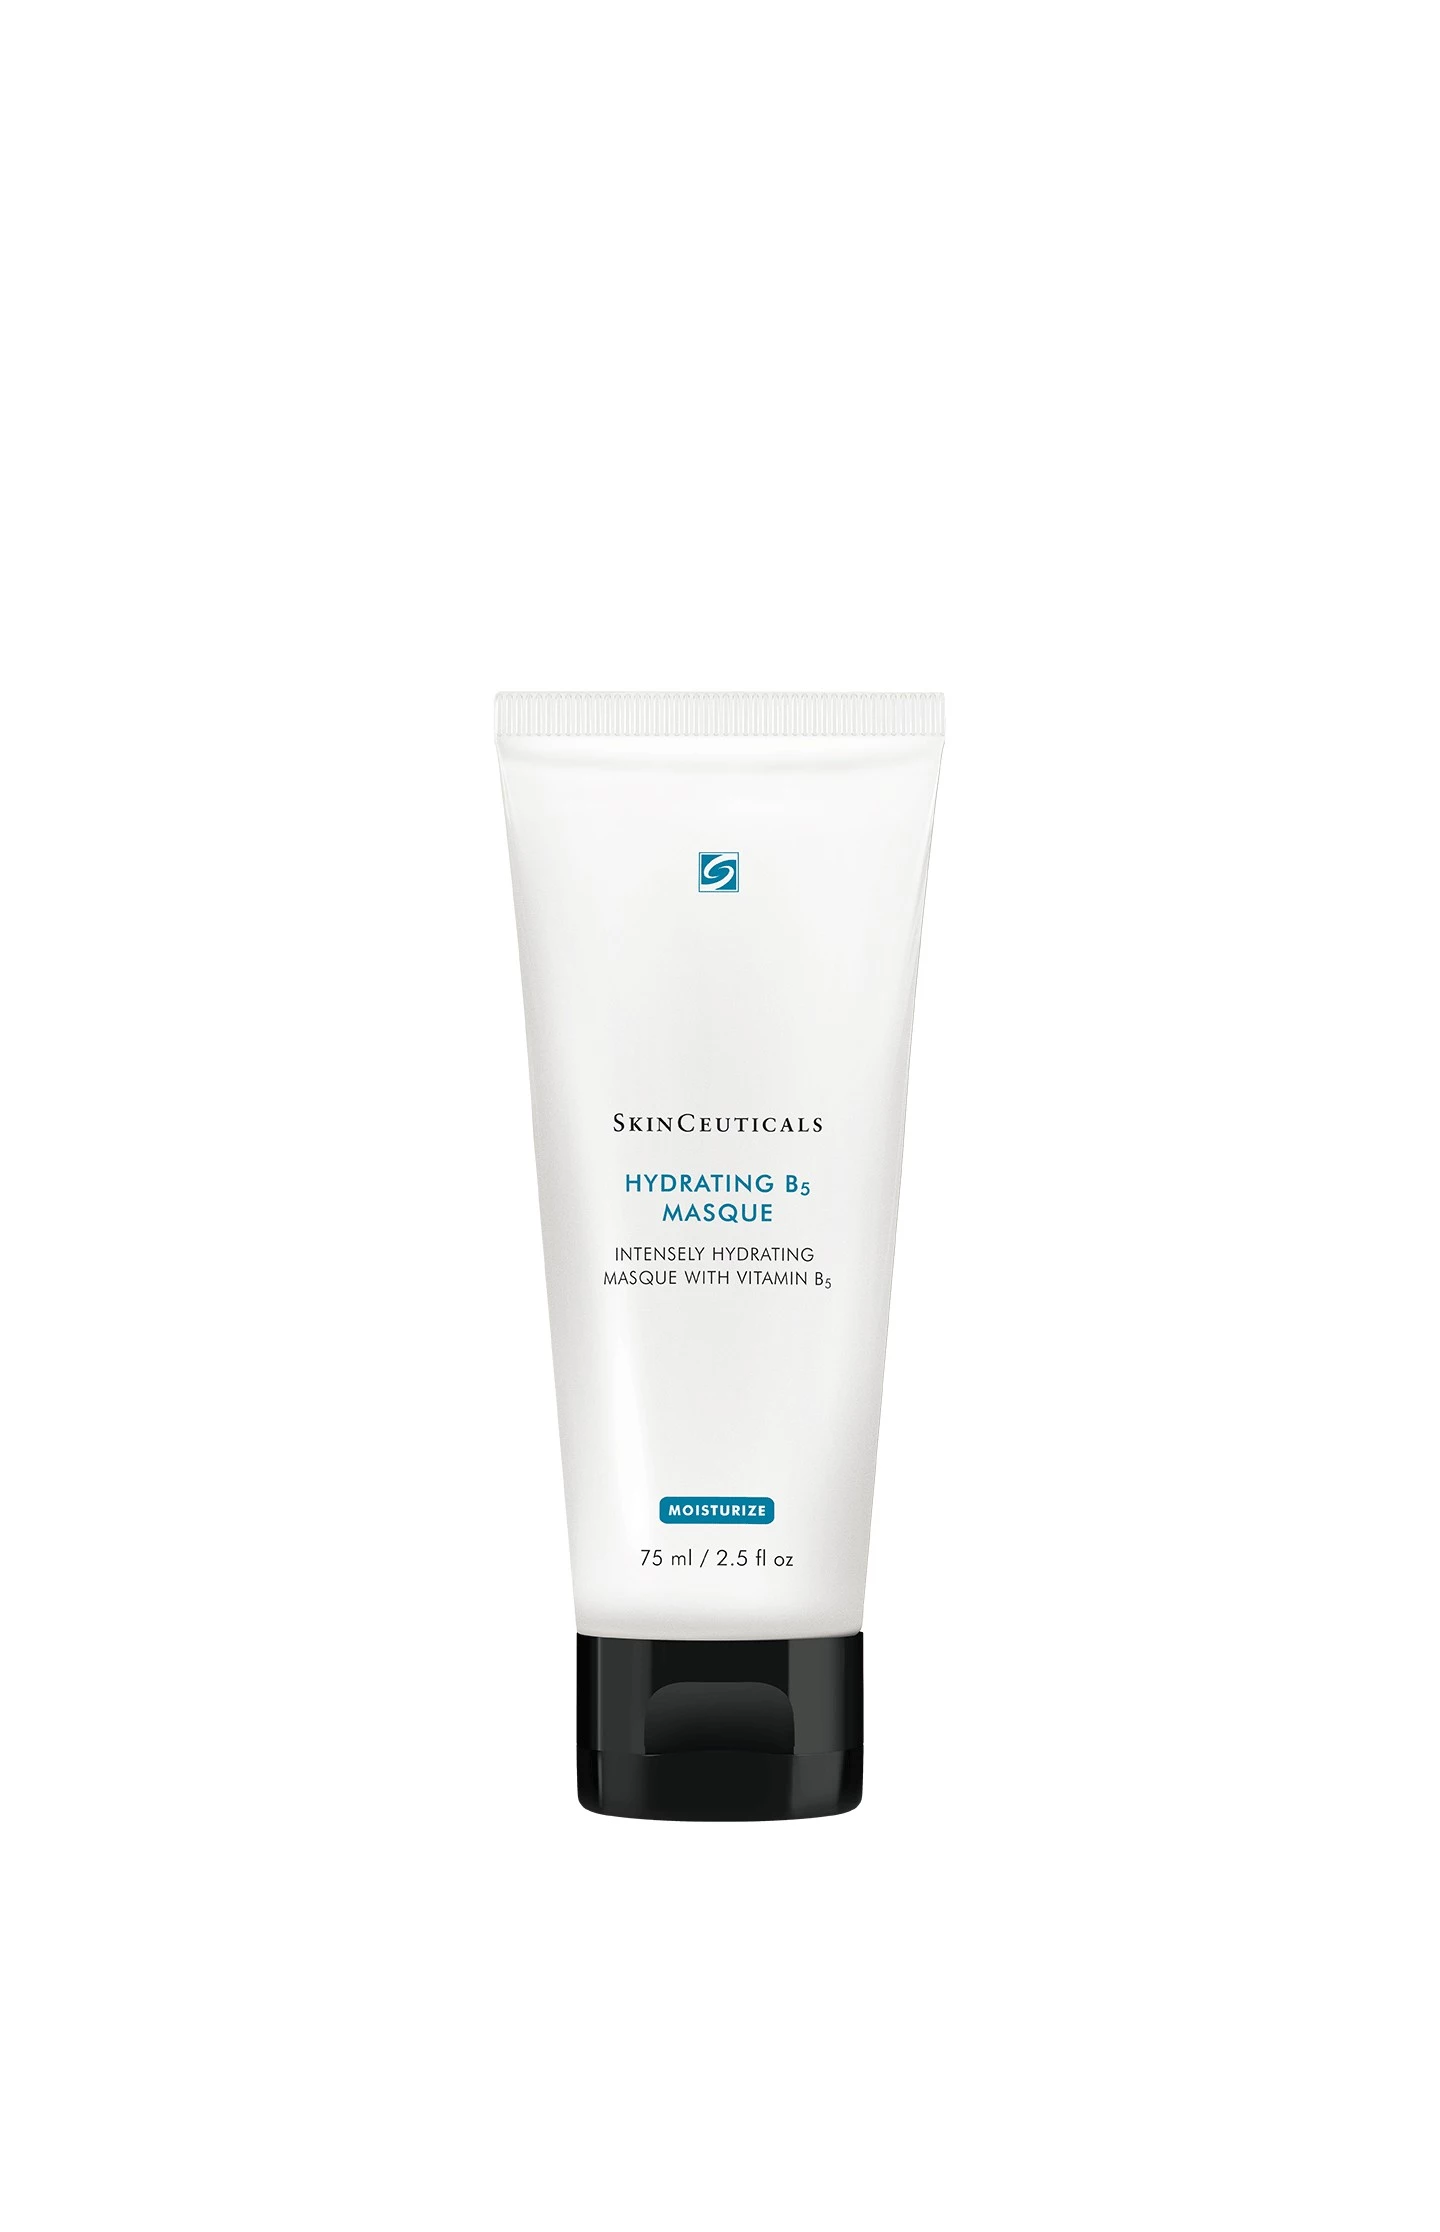 SkinCeuticals Hidrating B5 Masque, 75ml.